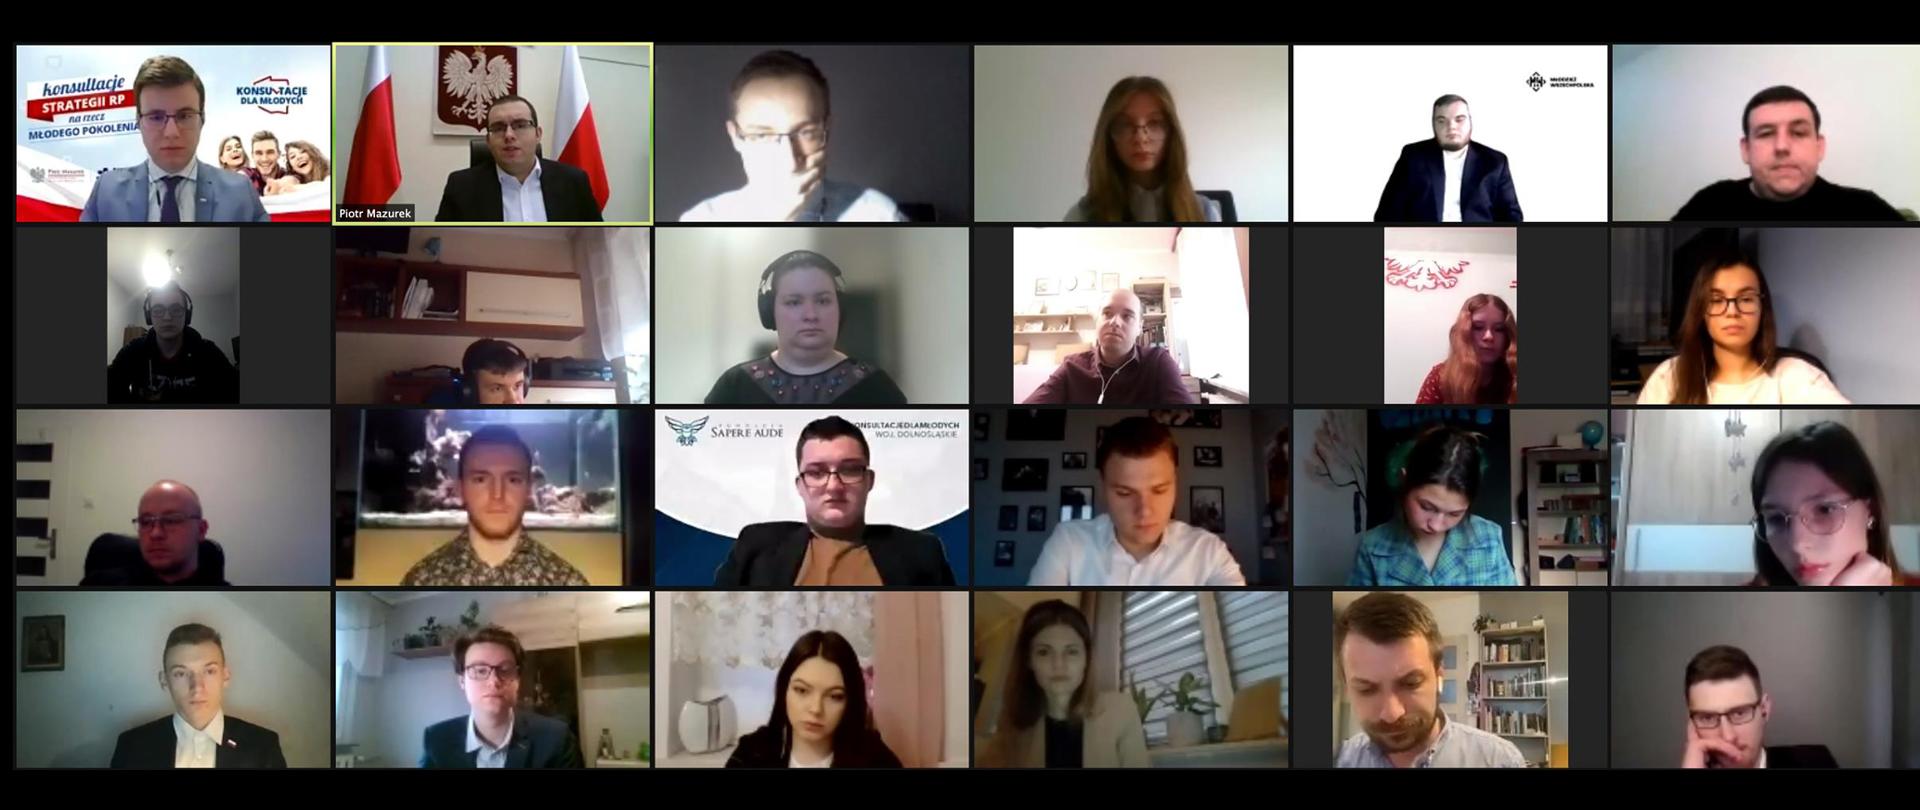 Konsultacje strategii na rzecz młodego pokolenia - zrzut ekranu pokazujący uczestników wideospotkania